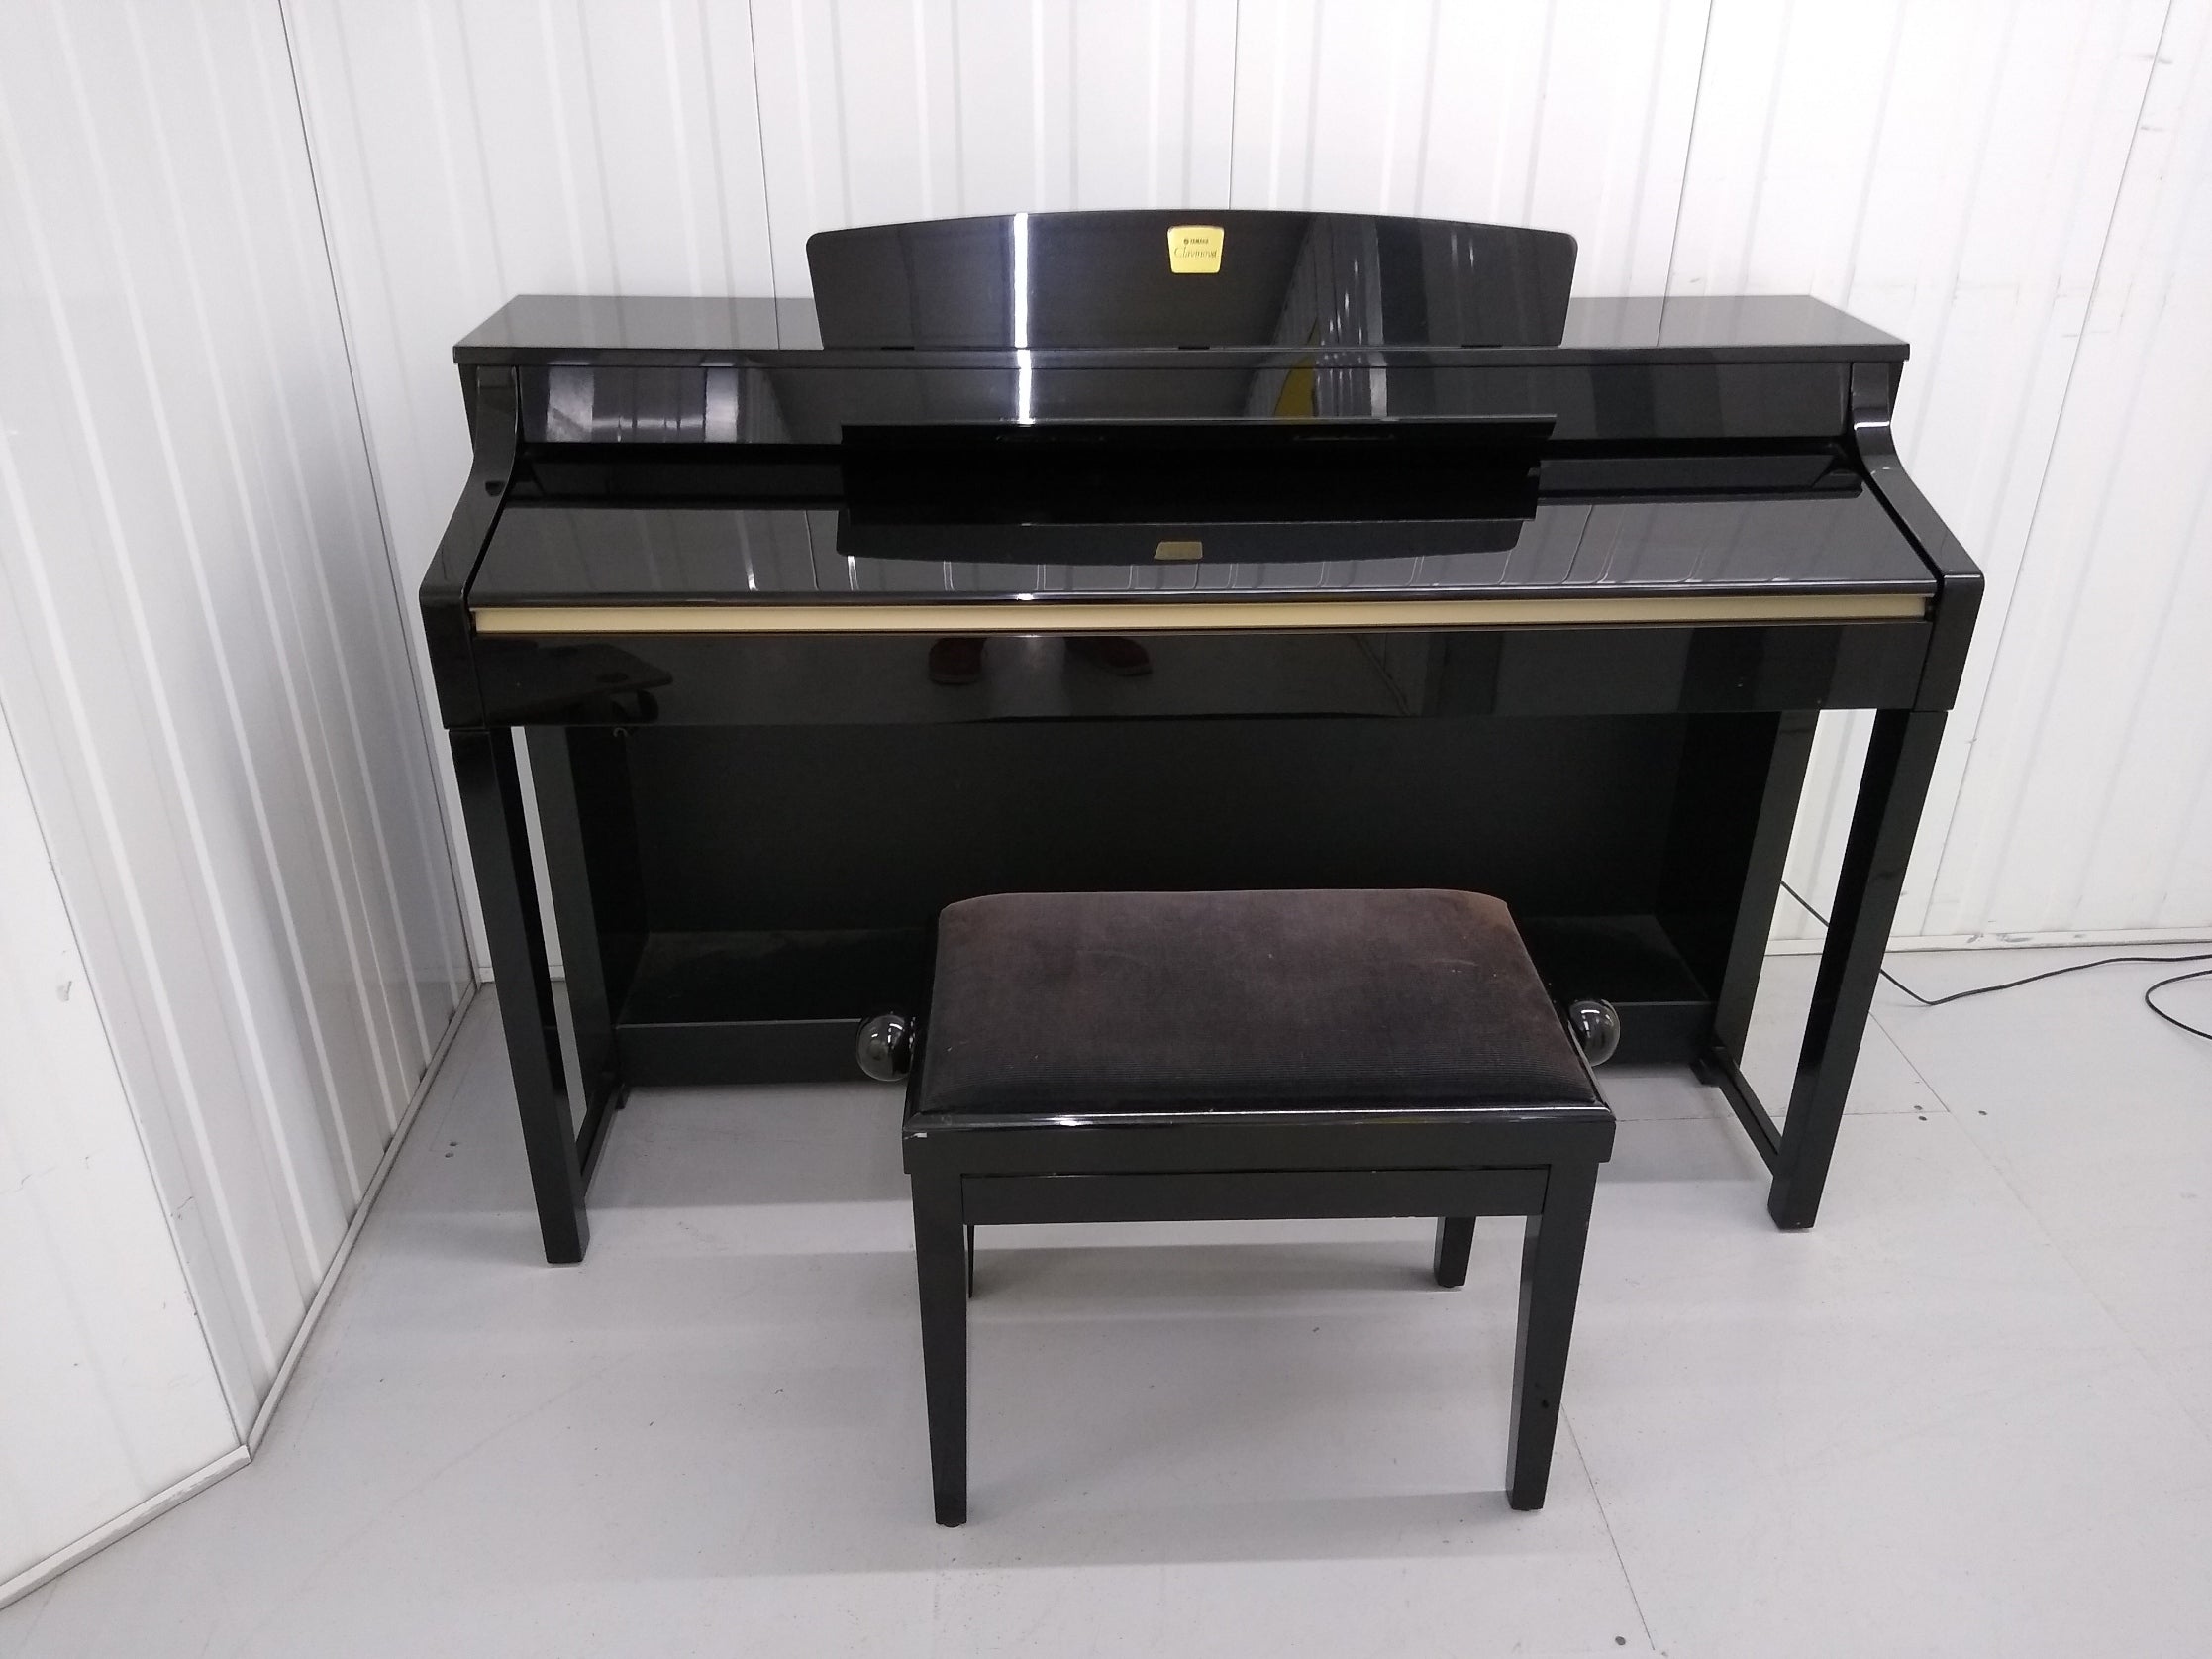 YAMAHA CLAVINOVA CLP-370PE DIGITAL PIANO + STOOL IN GLOSSY BLACK 